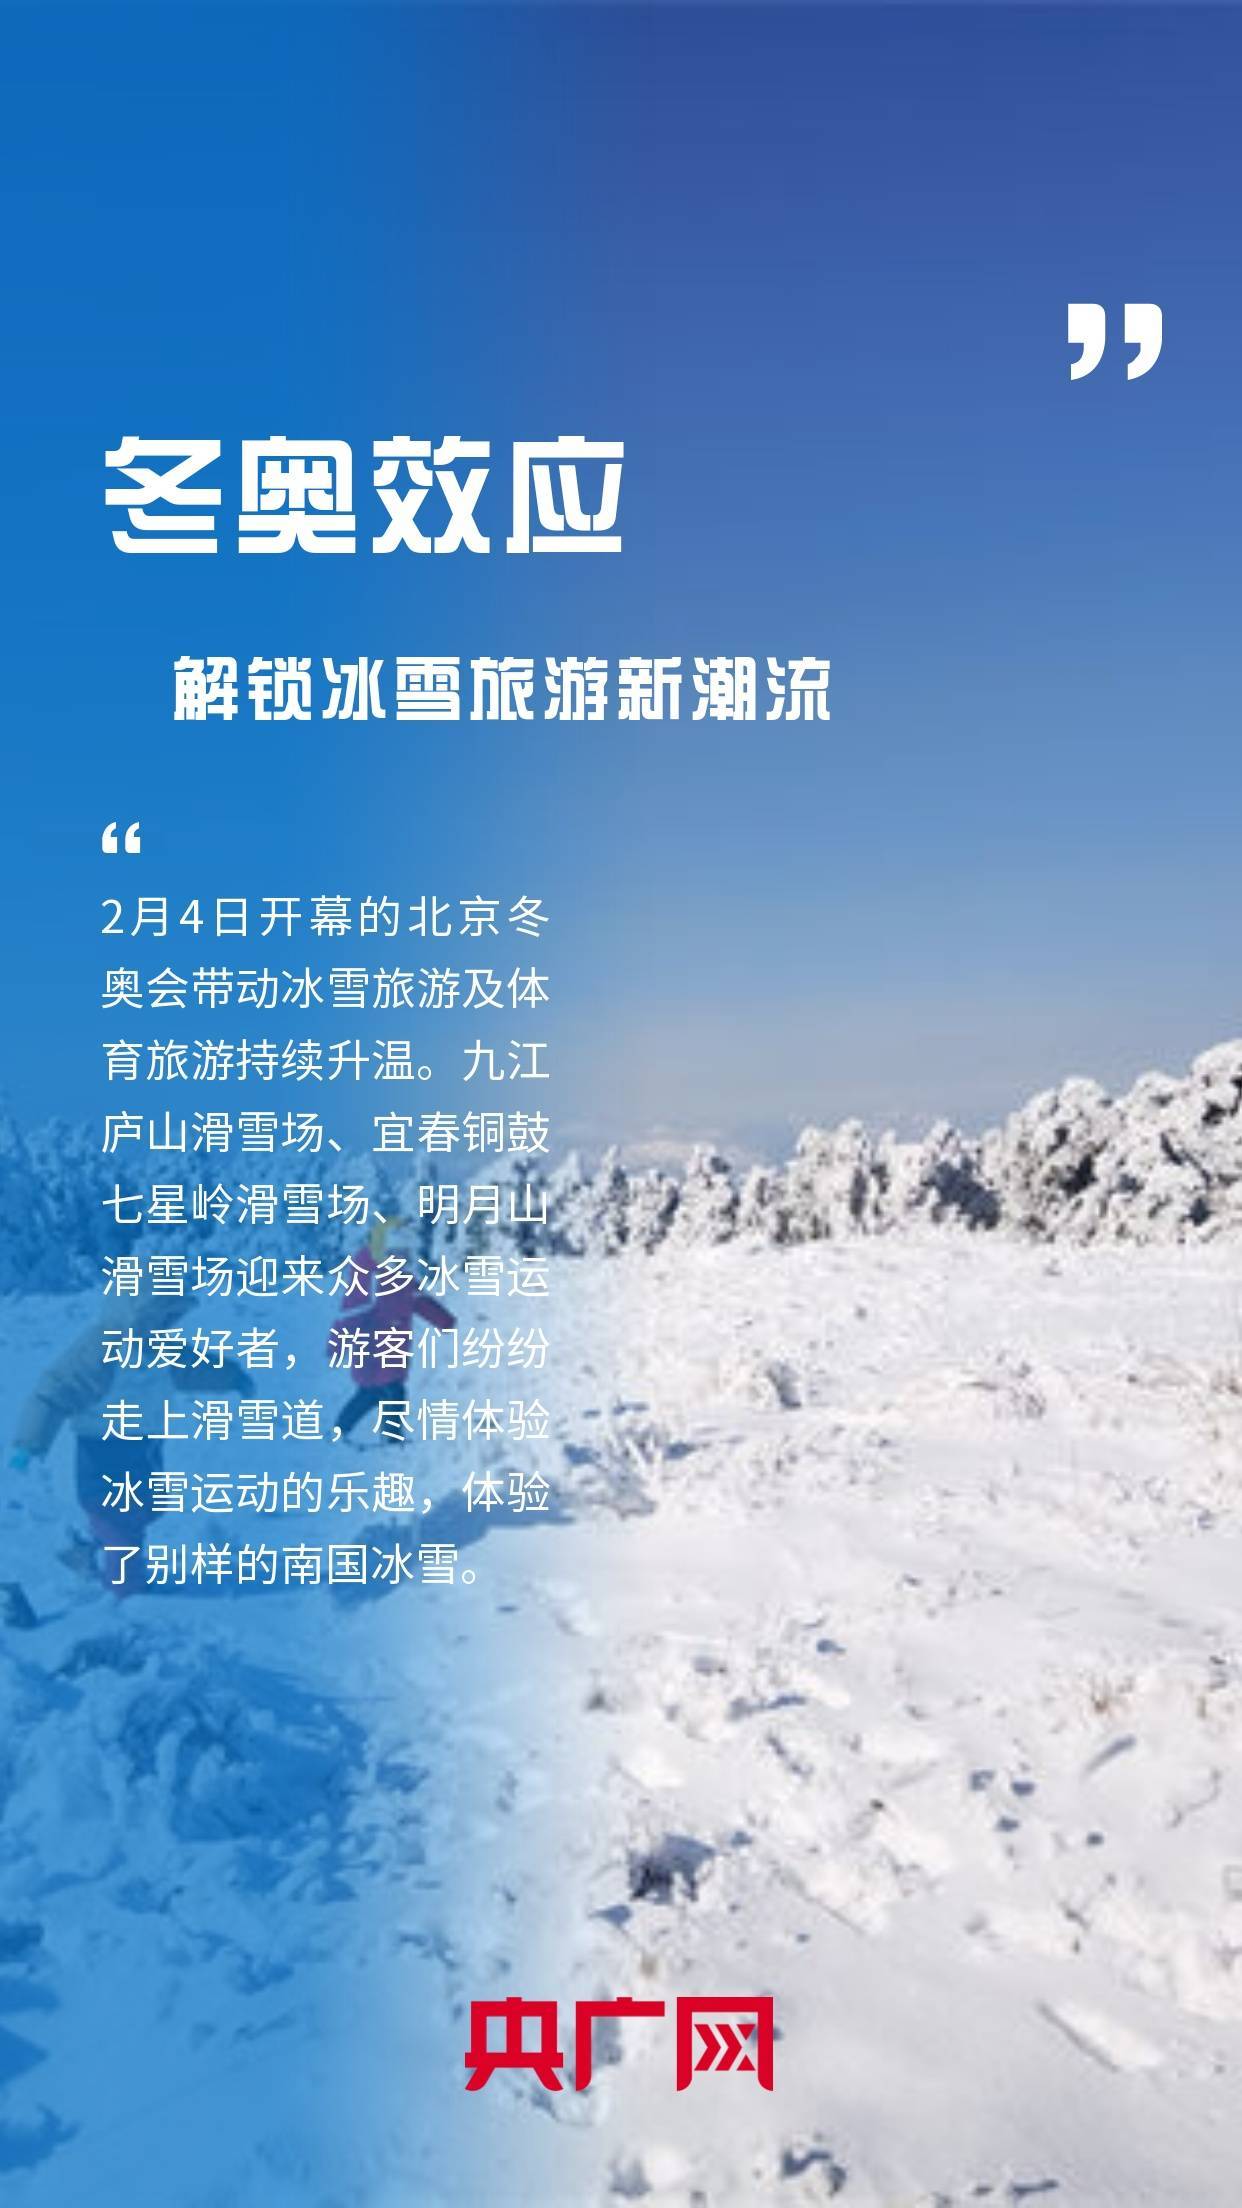 夜间|一图读懂|2022江西春节七天乐 “冰雪游”“温泉游”持续升温